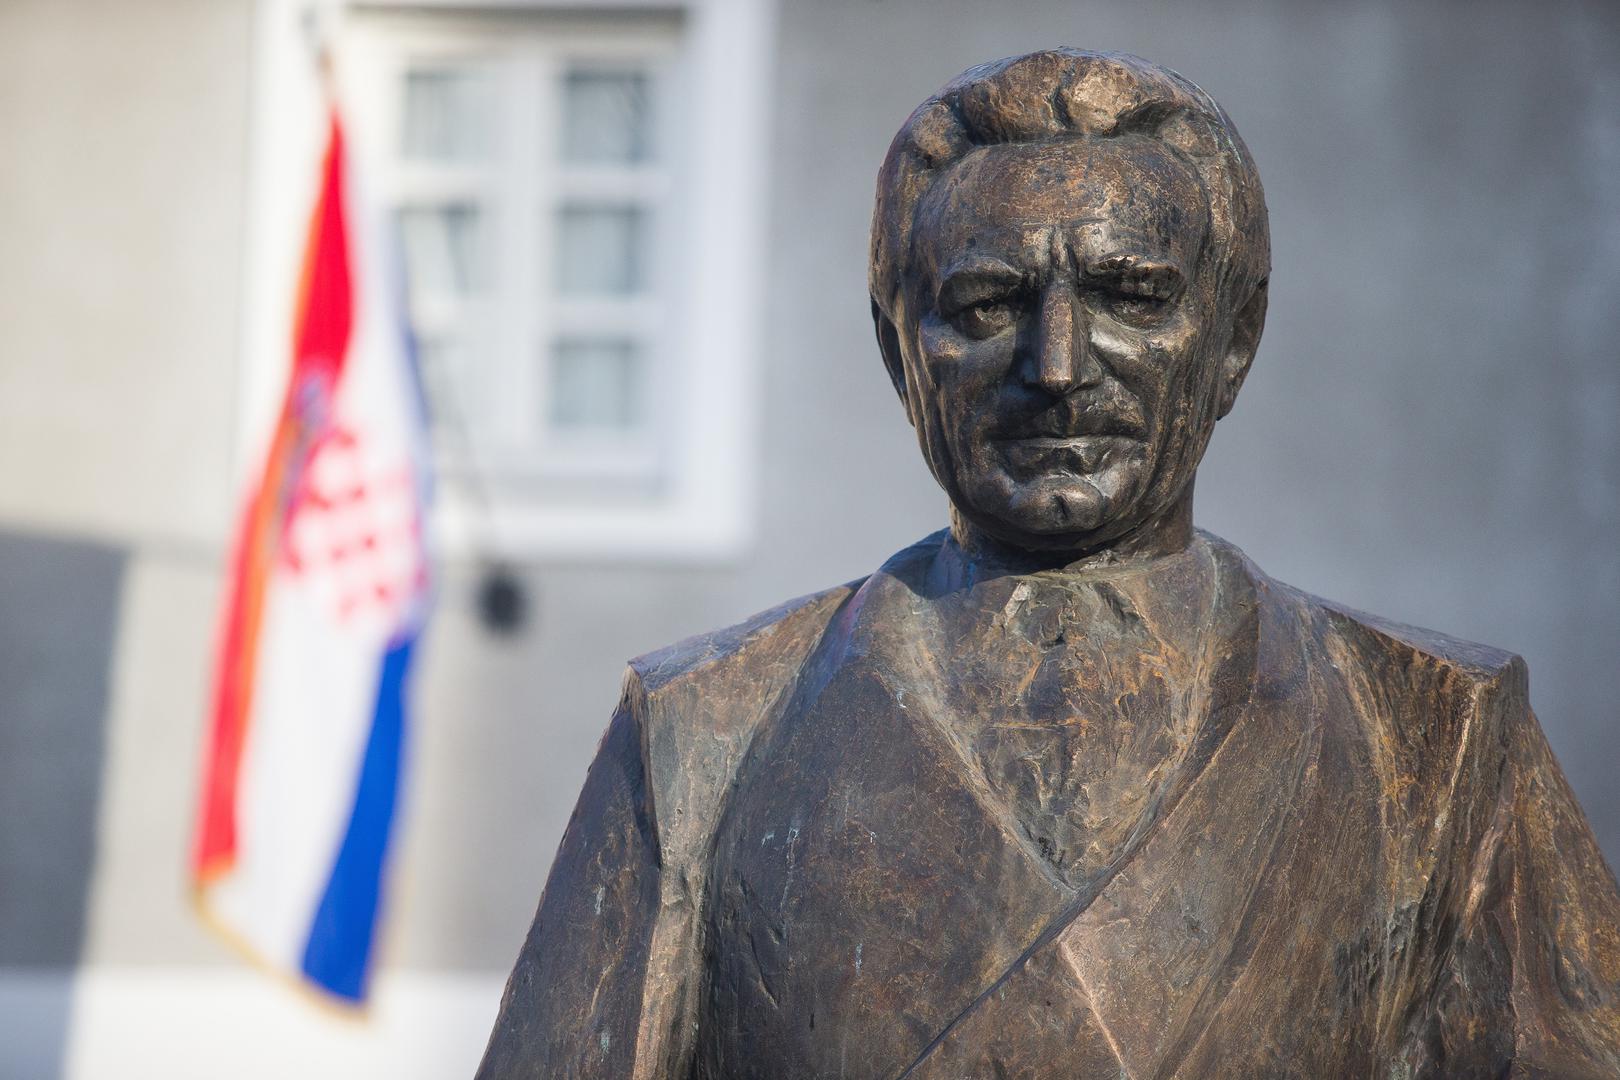 Franjo Tuđman umro je 10. prosinca 1999. godine, a bio je hrvatski predsjednik u ratnim godinama.

